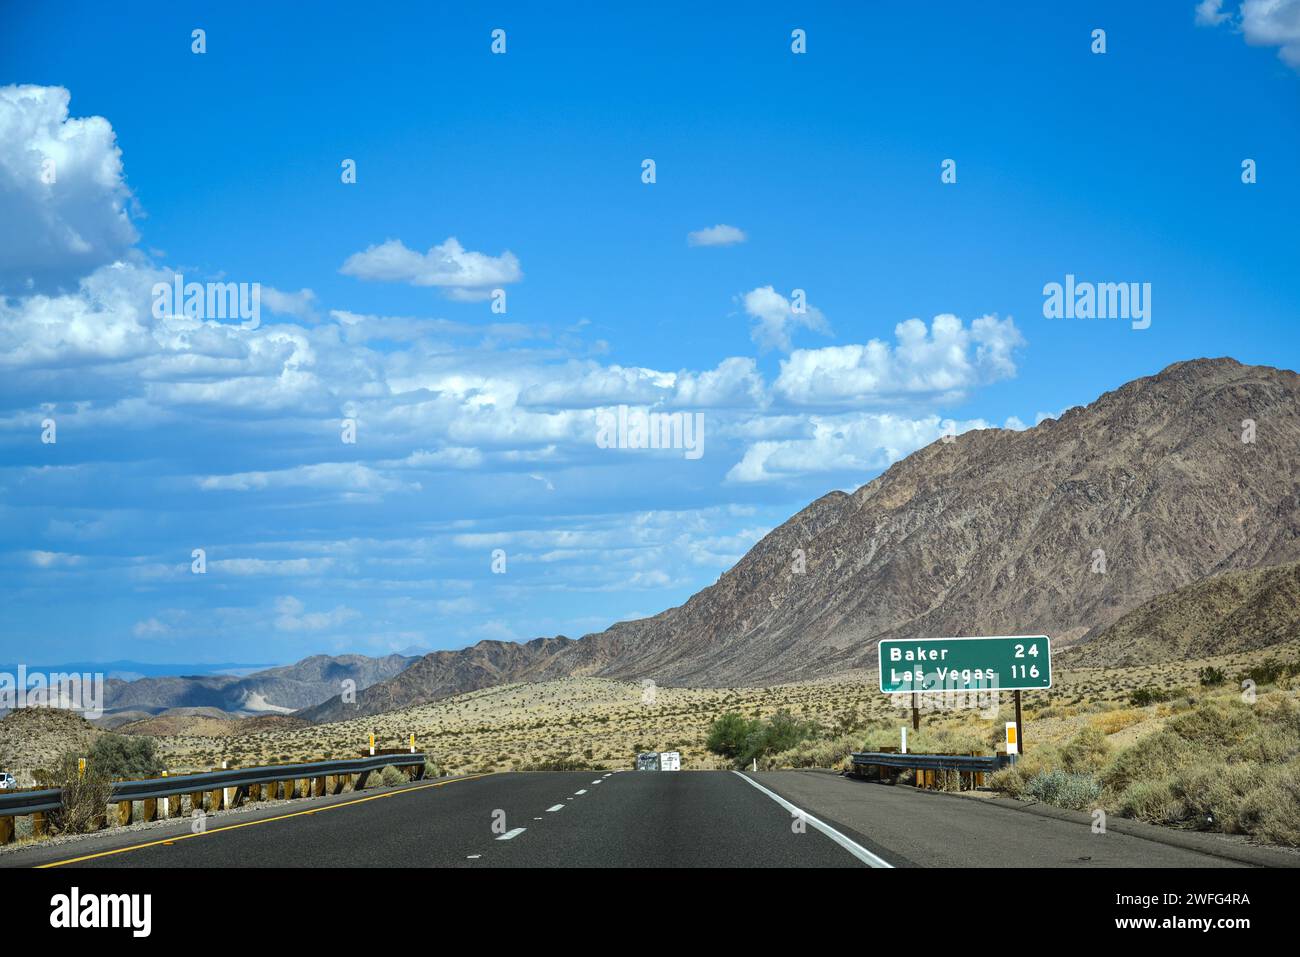 Guida sull'Interstate 15 vicino a Baker in rotta per Las Vegas - California, Stati Uniti Foto Stock